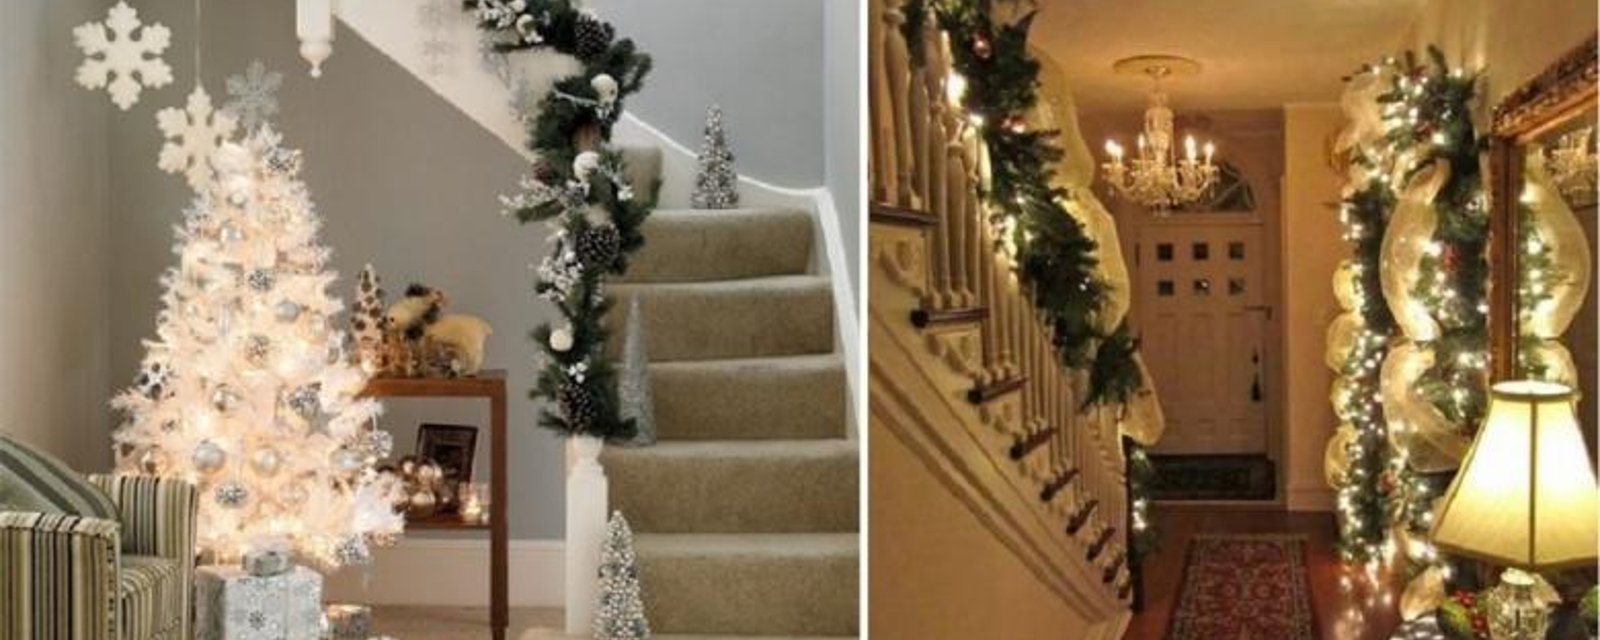 Décorer l'escalier et le vestibule pour Noël! 35 merveilleuses idées à voir! 